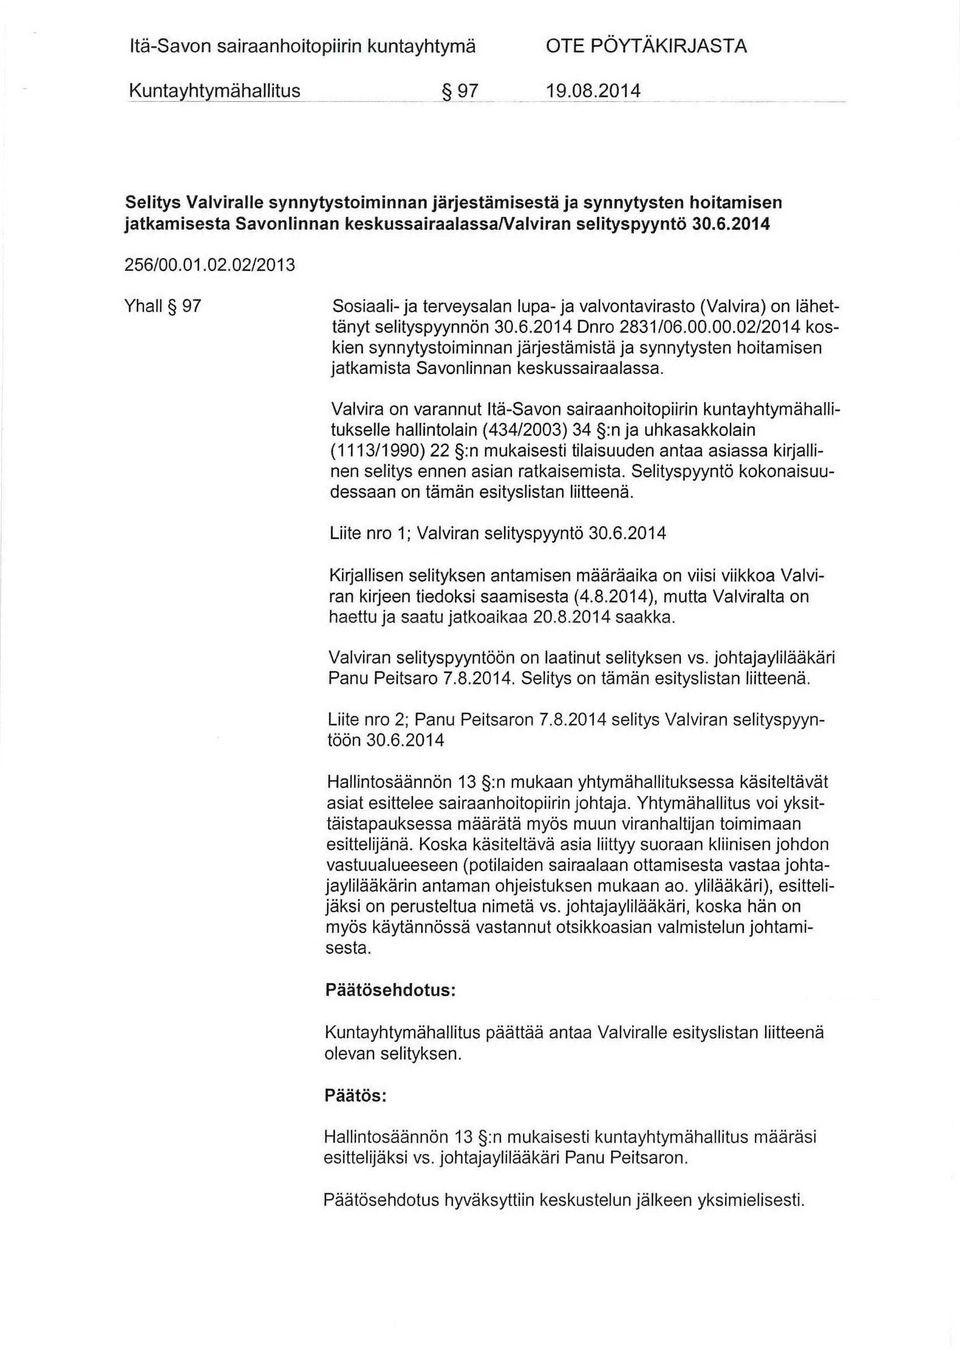 02/2013 Yhall 97 Sosiaali- ja terveysalan lupa- ja valvontavirasto (Valvira) on lähettänyt selityspyynnön Dnro 2831/06.00.